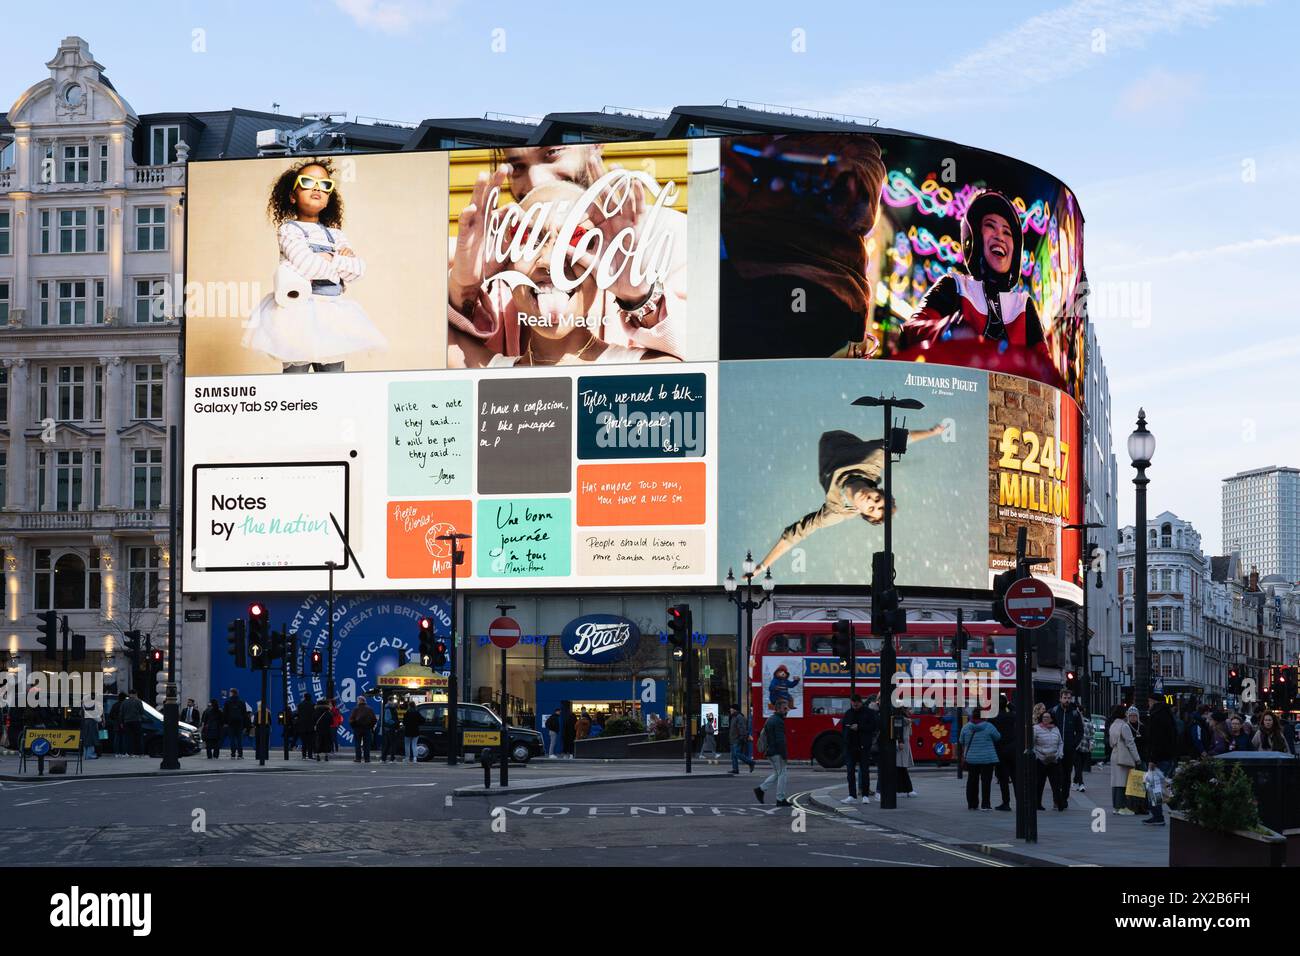 Énormes enseignes au néon et affichage vidéo sur le côté d'un bâtiment à Piccadilly Circus à Londres avec des piétons et un bus londonien devant. Angleterre, Royaume-Uni Banque D'Images